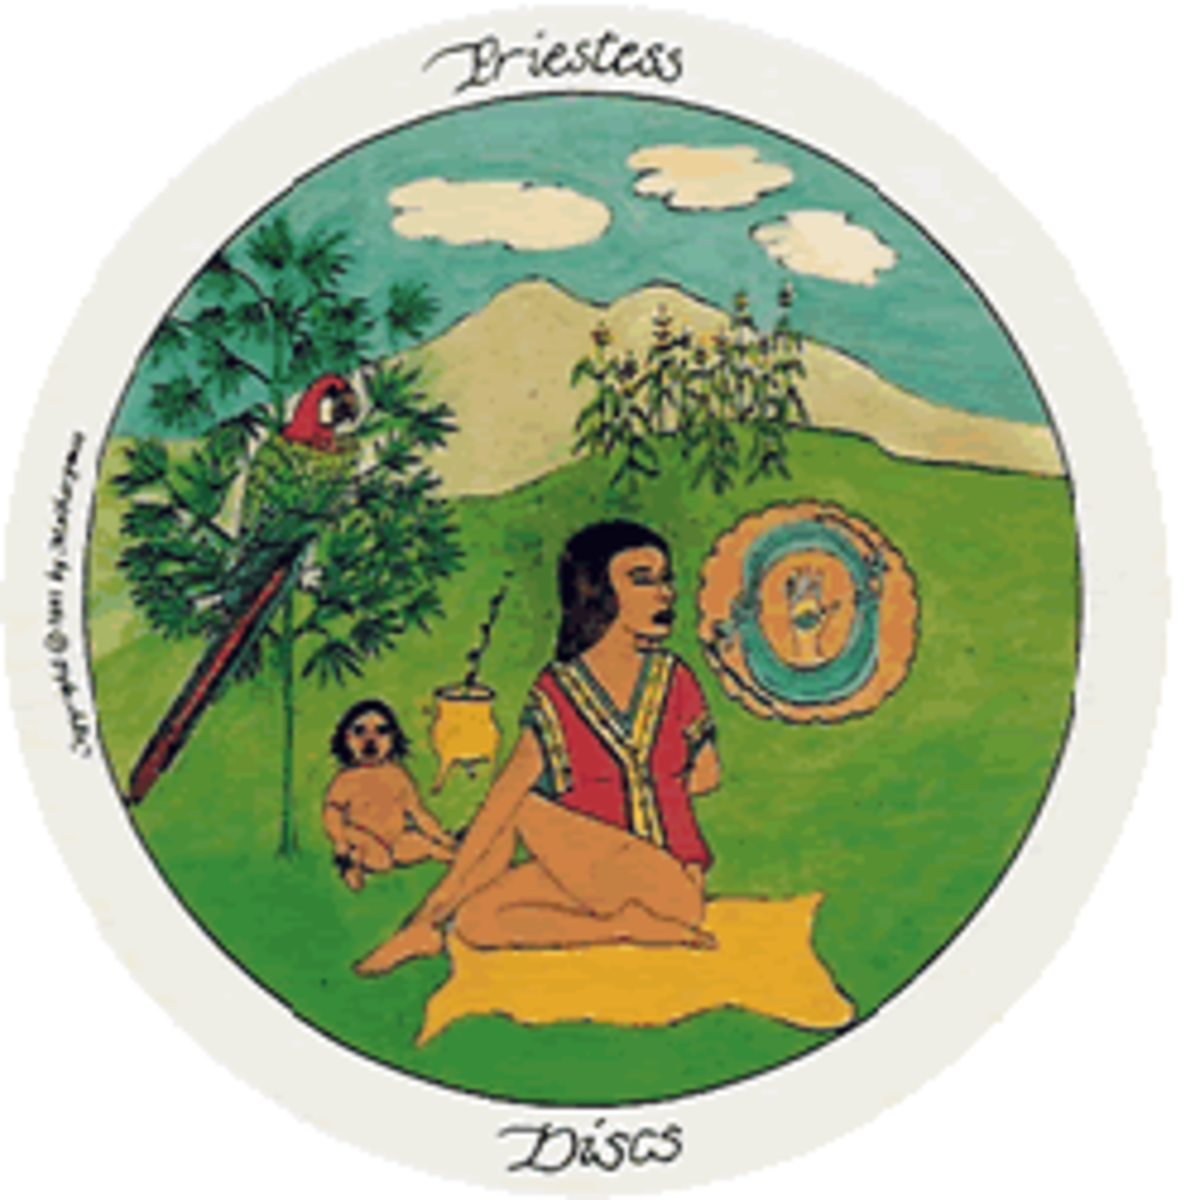 Priestess of Discs